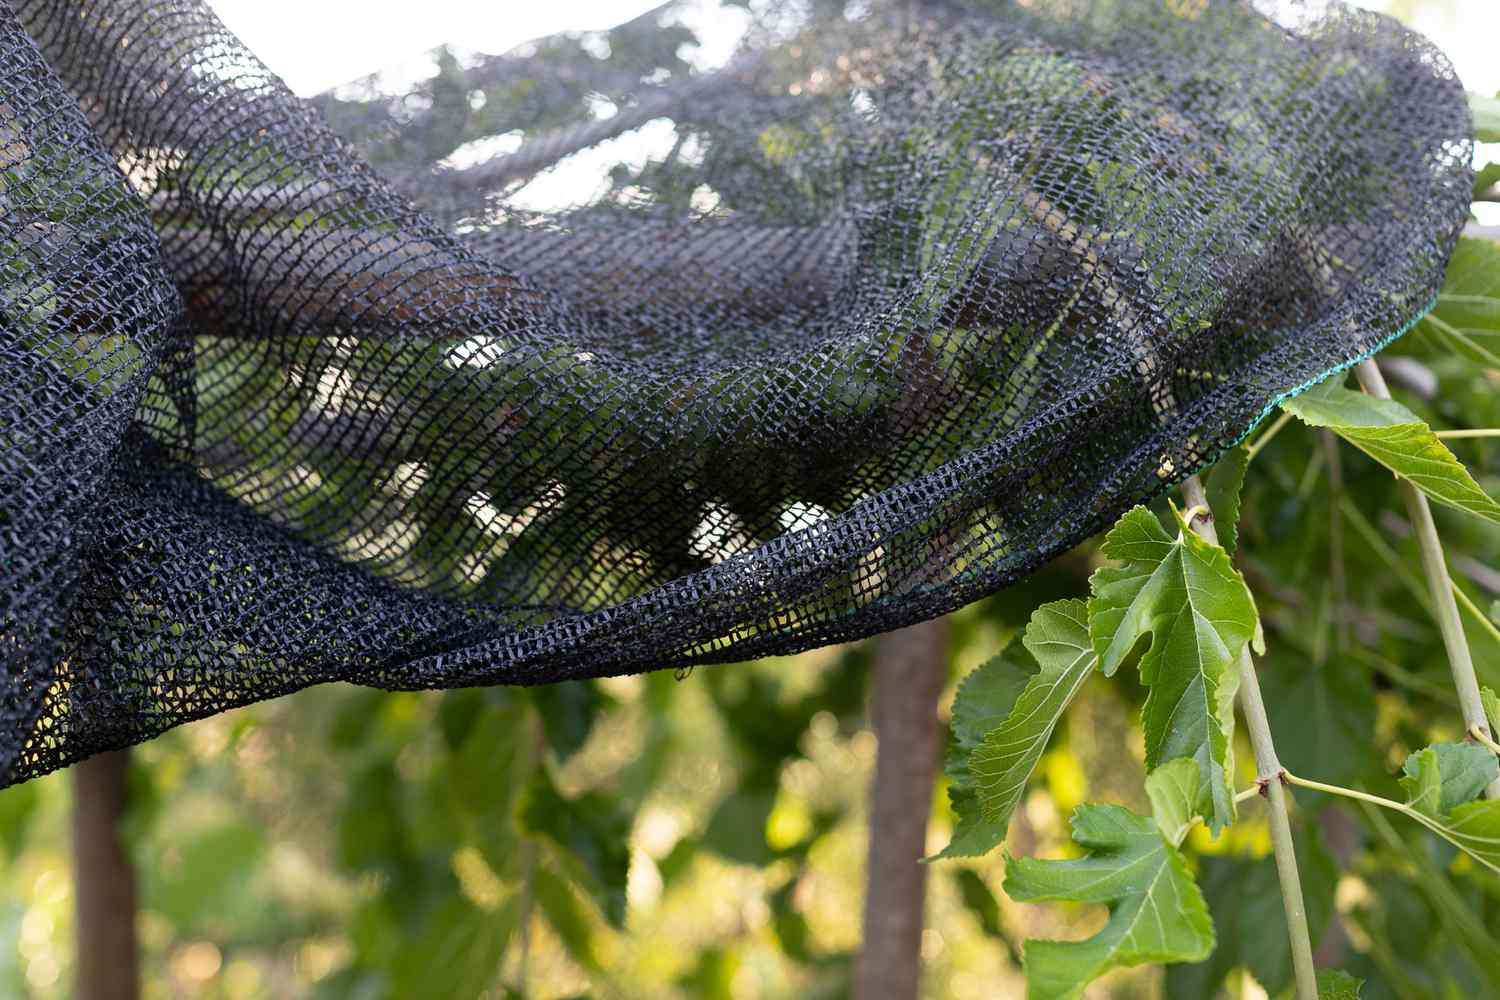 Netz, das die Pflanzen bedeckt, um zu verhindern, dass Vögel Beeren fressen